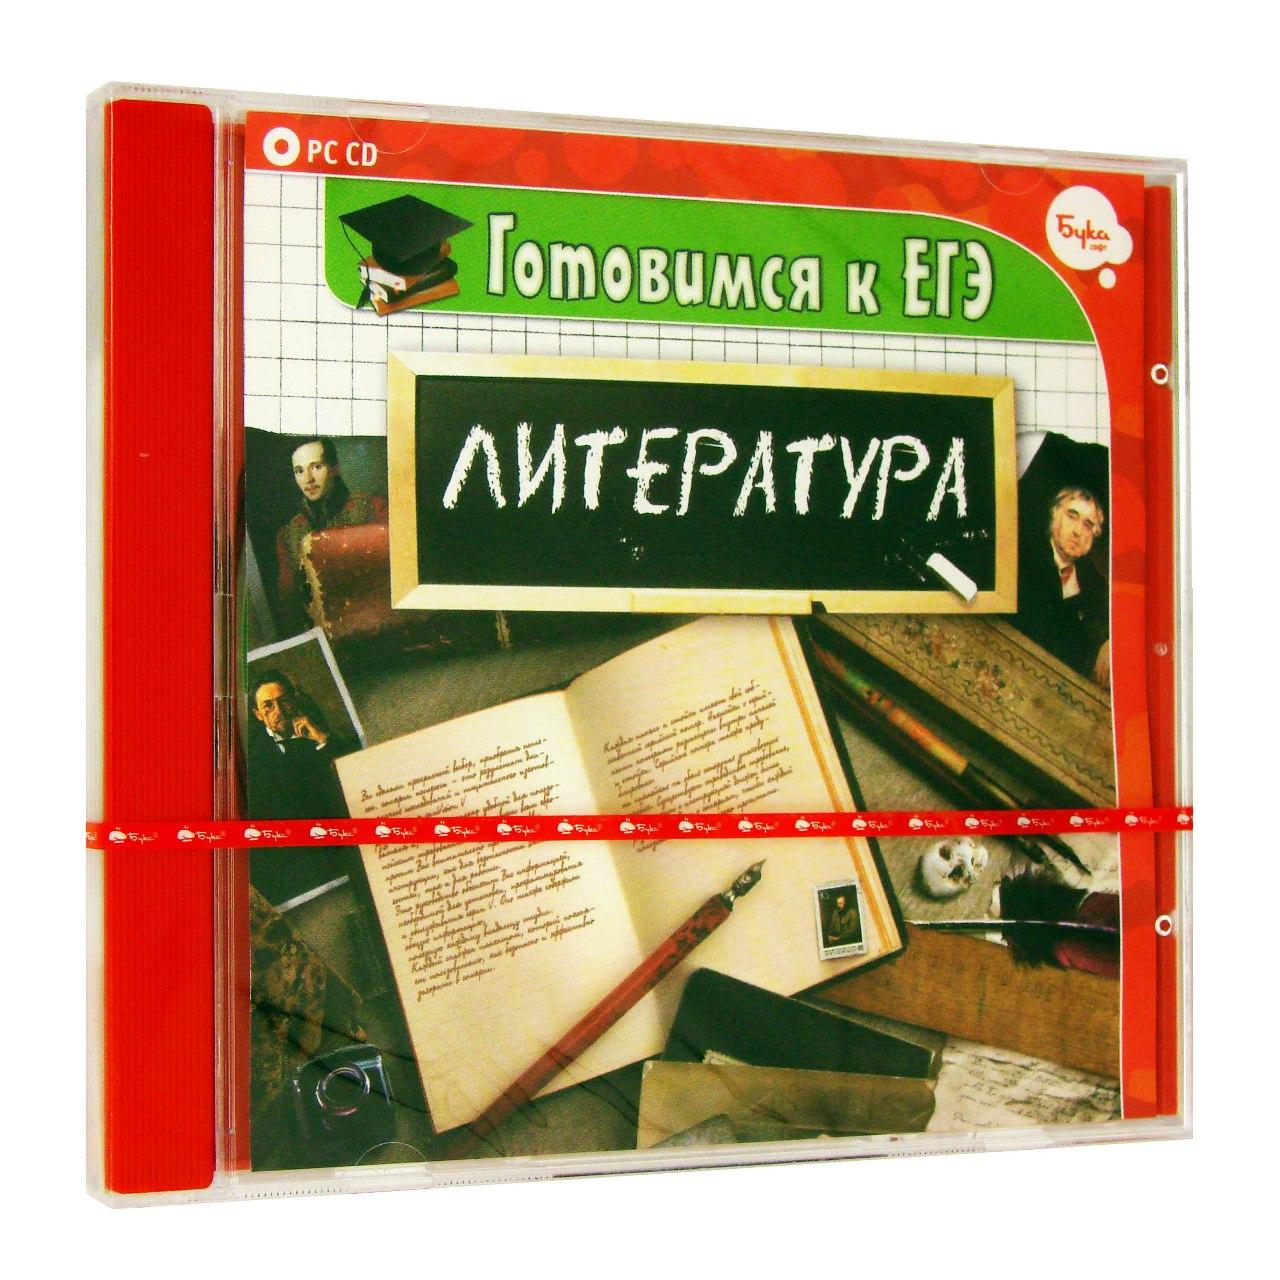 Компьютерный компакт-диск Готовимся к ЕГЭ. Литература (ПК), фирма "Бука", 1CD